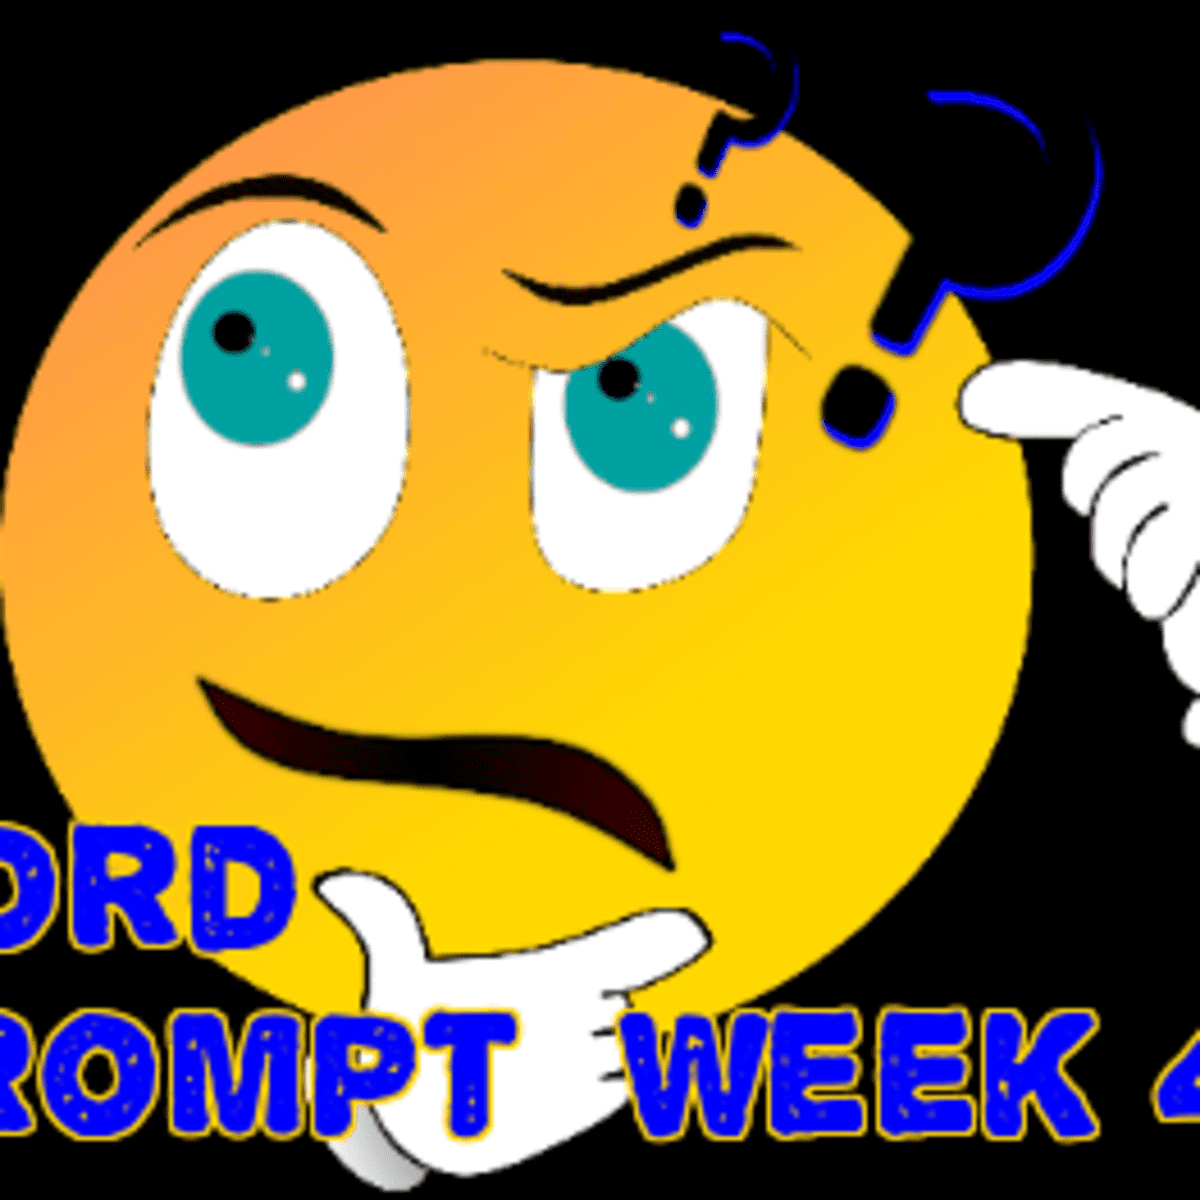 word prompts help creativity week 46